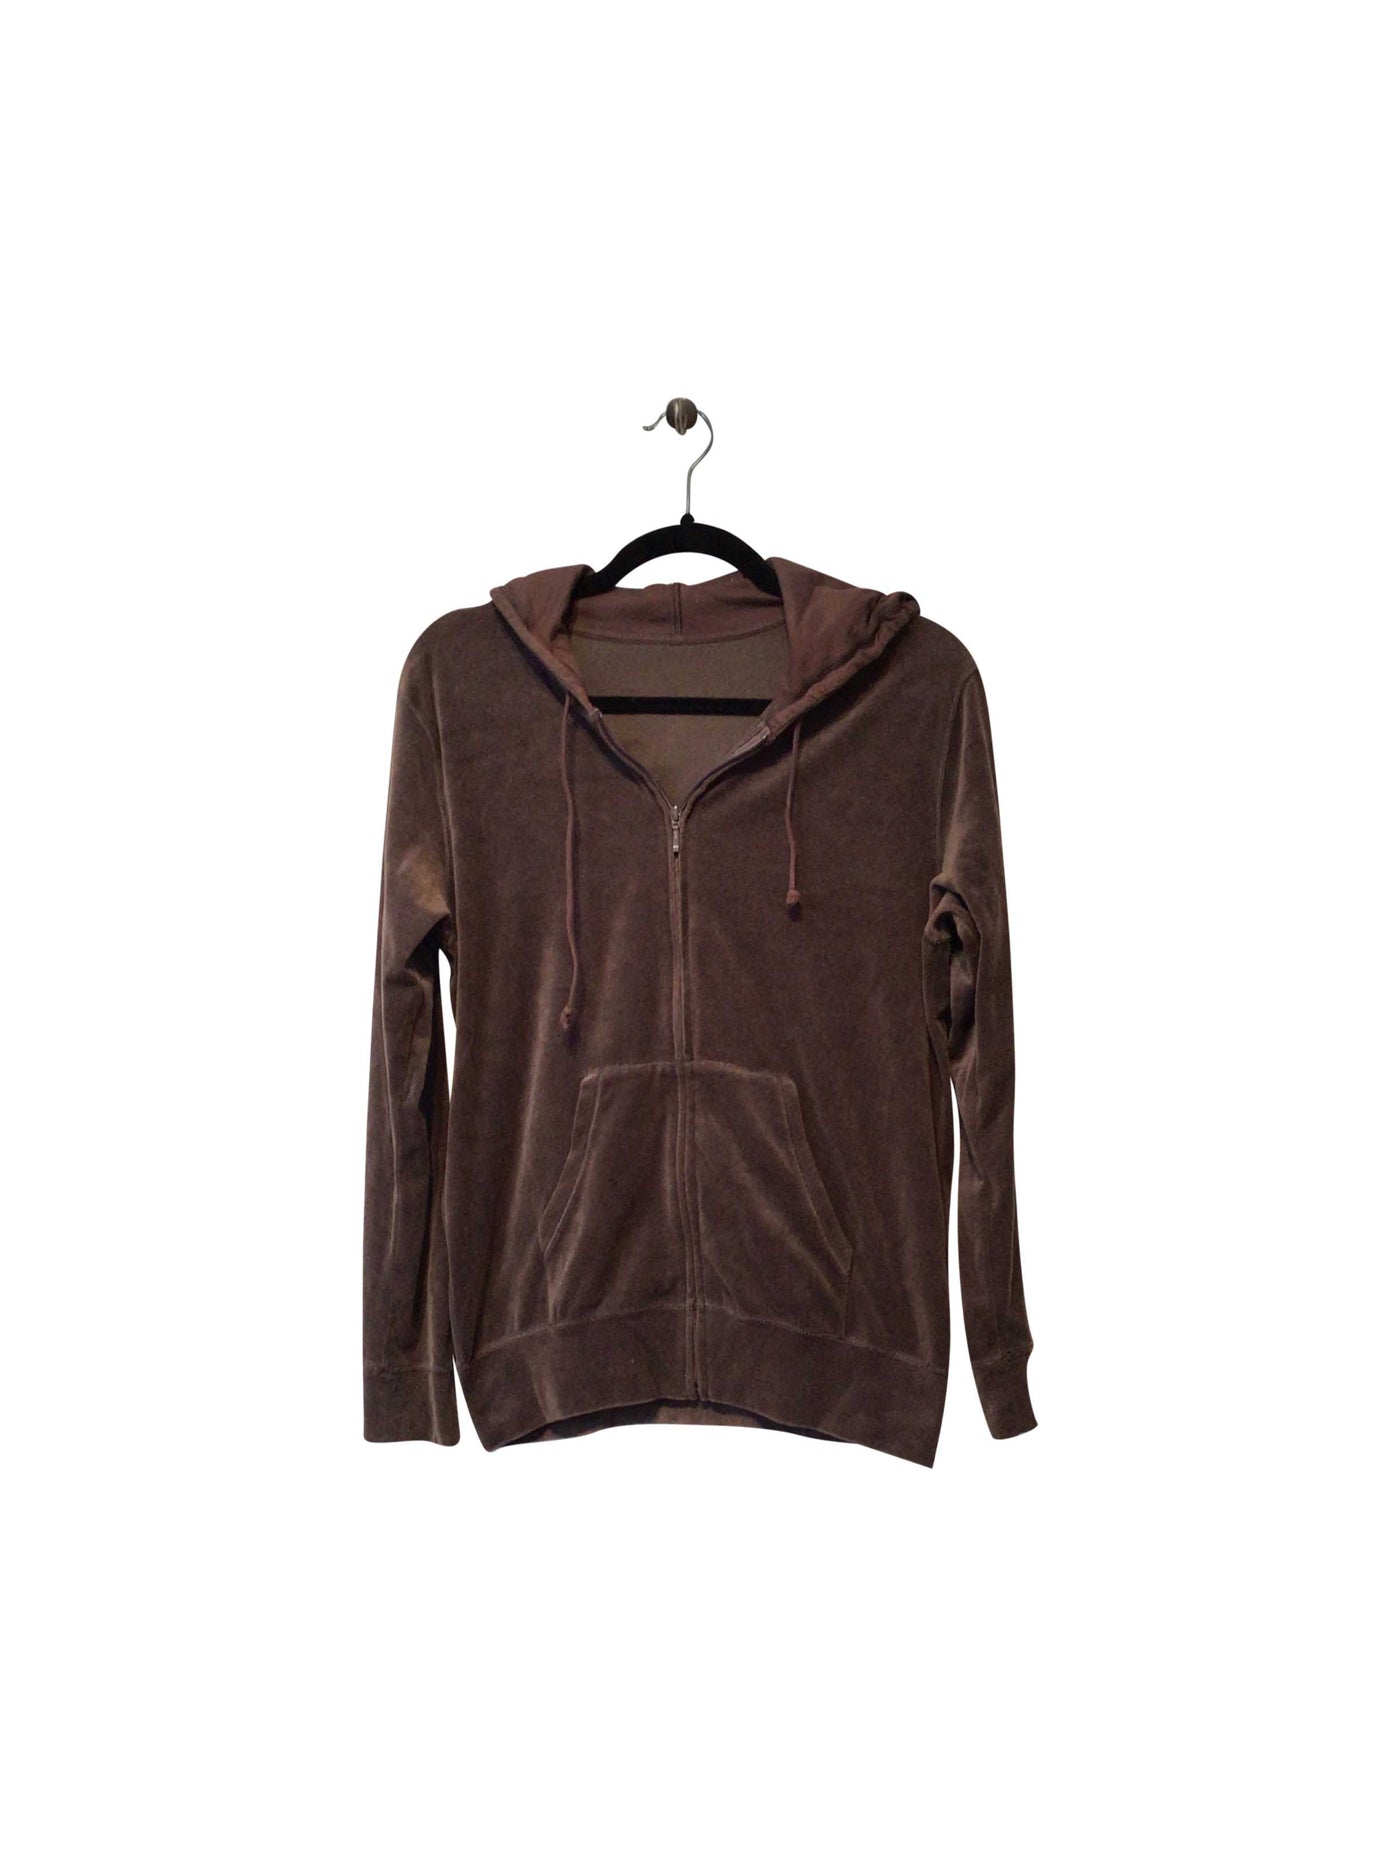 UNBRANDED Regular fit Sweatshirt in Brown  -  M  8.99 Koop